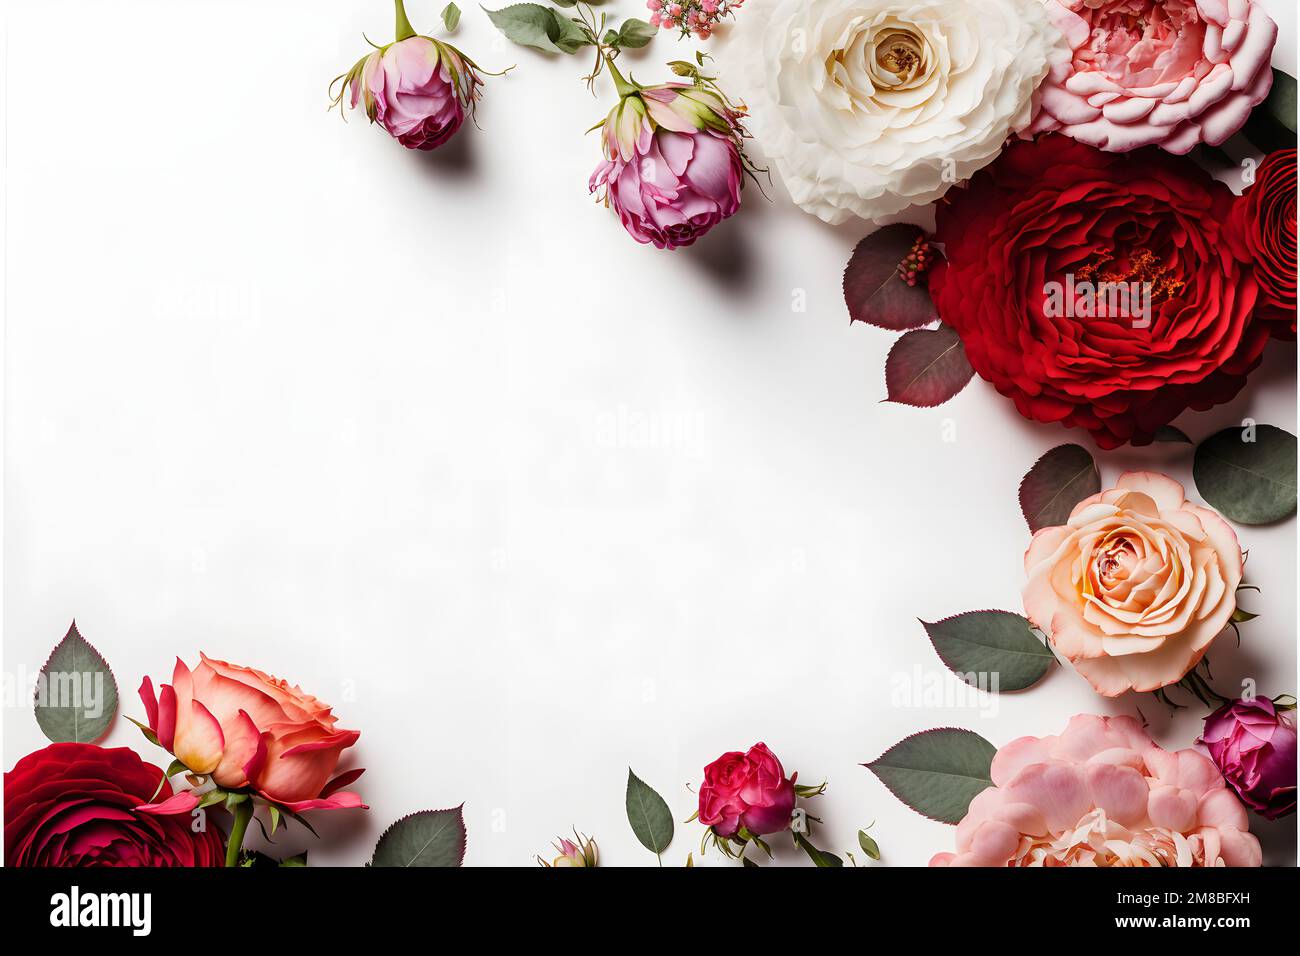 Una splendida immagine con un fiore rosa rosso e rosa con uno spazio vuoto al centro, perfetta per aggiungere testo o grafica sovrapponente. Foto Stock